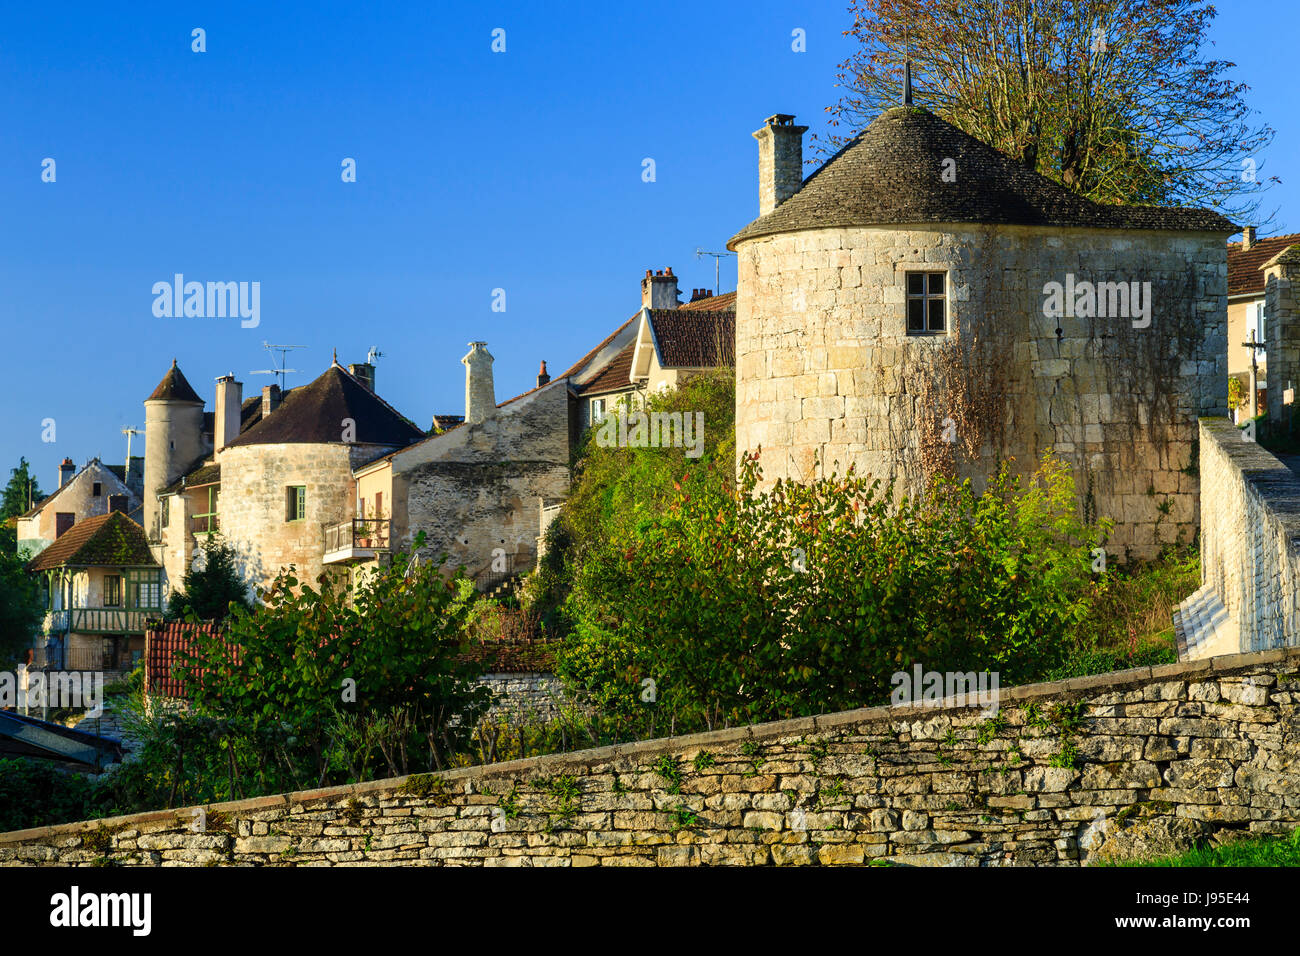 Francia, Yonne, Noyers o Noyers sur Serein, etiquetados Les Plus Beaux de France (Los pueblos más bellos de Francia), aldea de fortificaciones Foto de stock